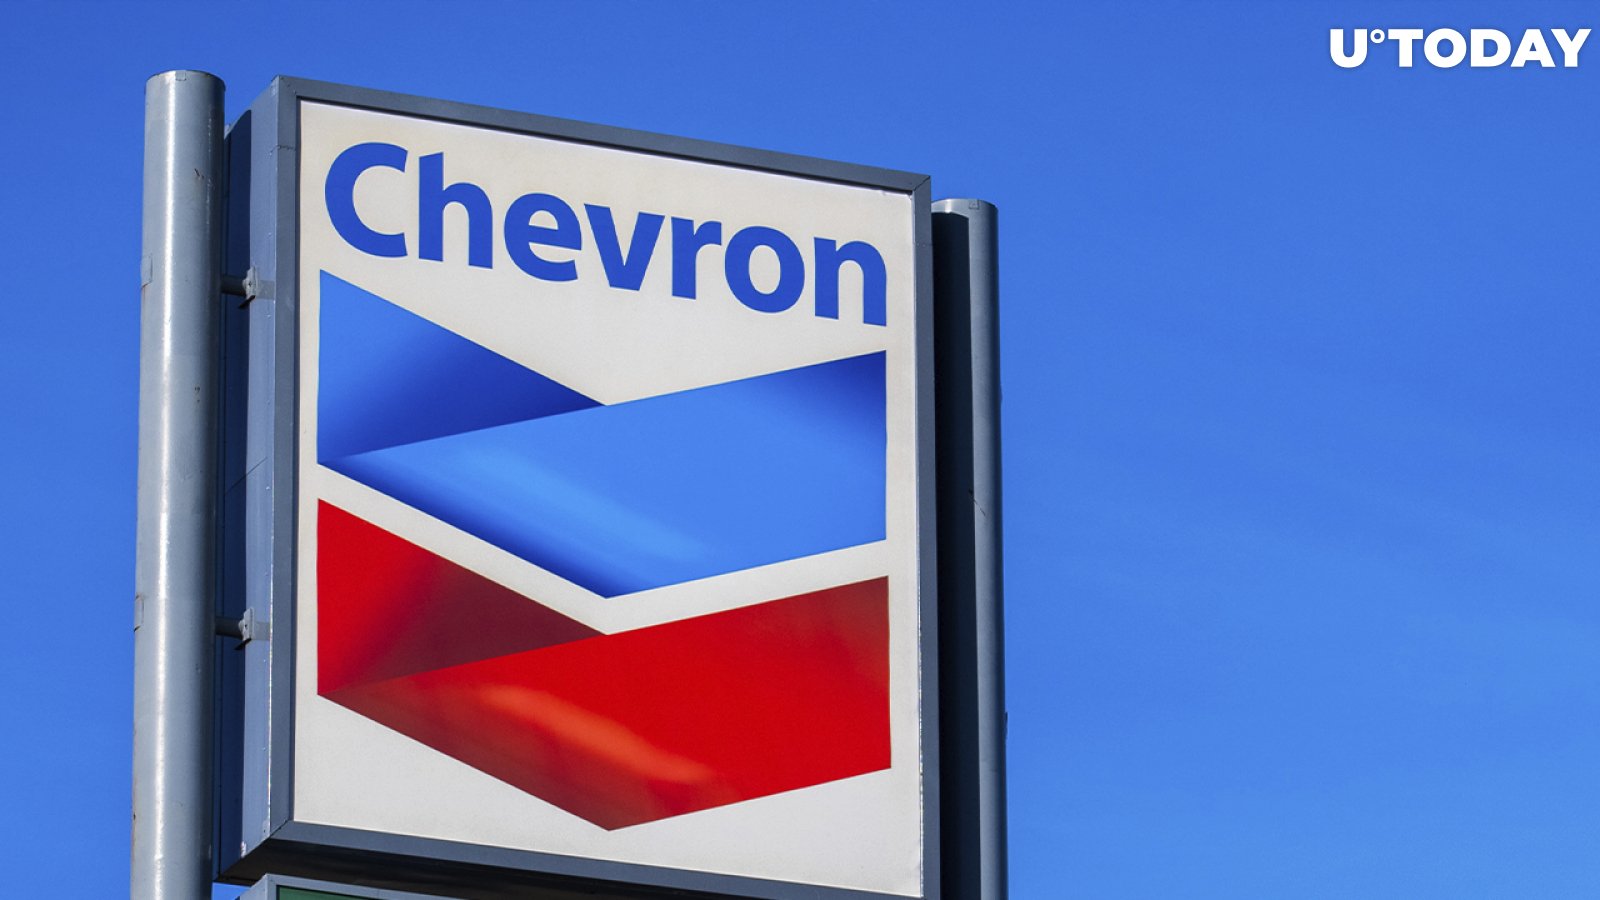 US Energy Giant Chevron Plans to Enter Metaverse